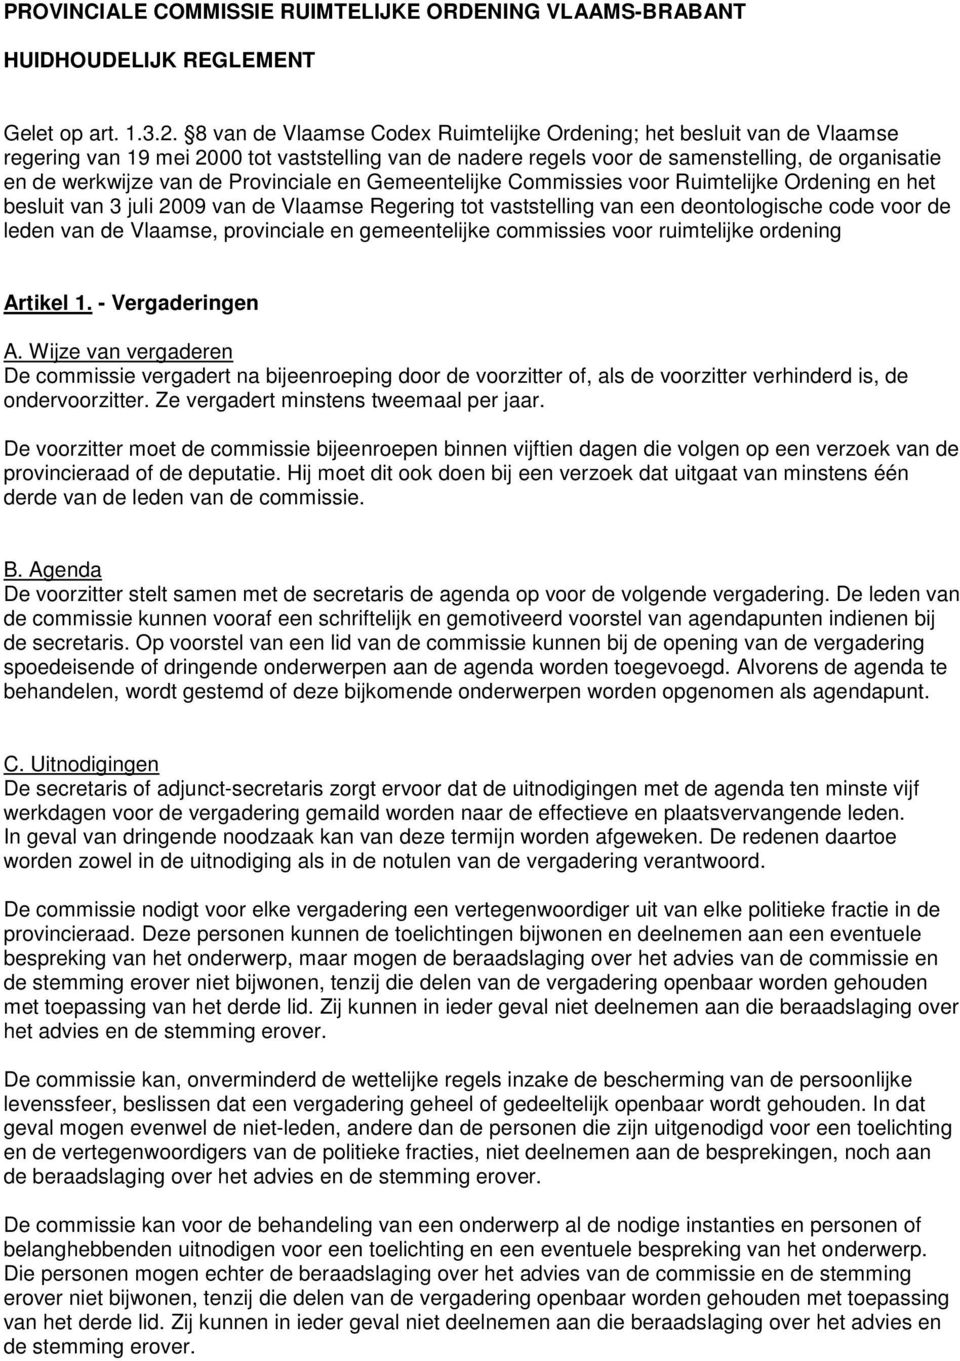 Provinciale en Gemeentelijke Commissies voor Ruimtelijke Ordening en het besluit van 3 juli 2009 van de Vlaamse Regering tot vaststelling van een deontologische code voor de leden van de Vlaamse,